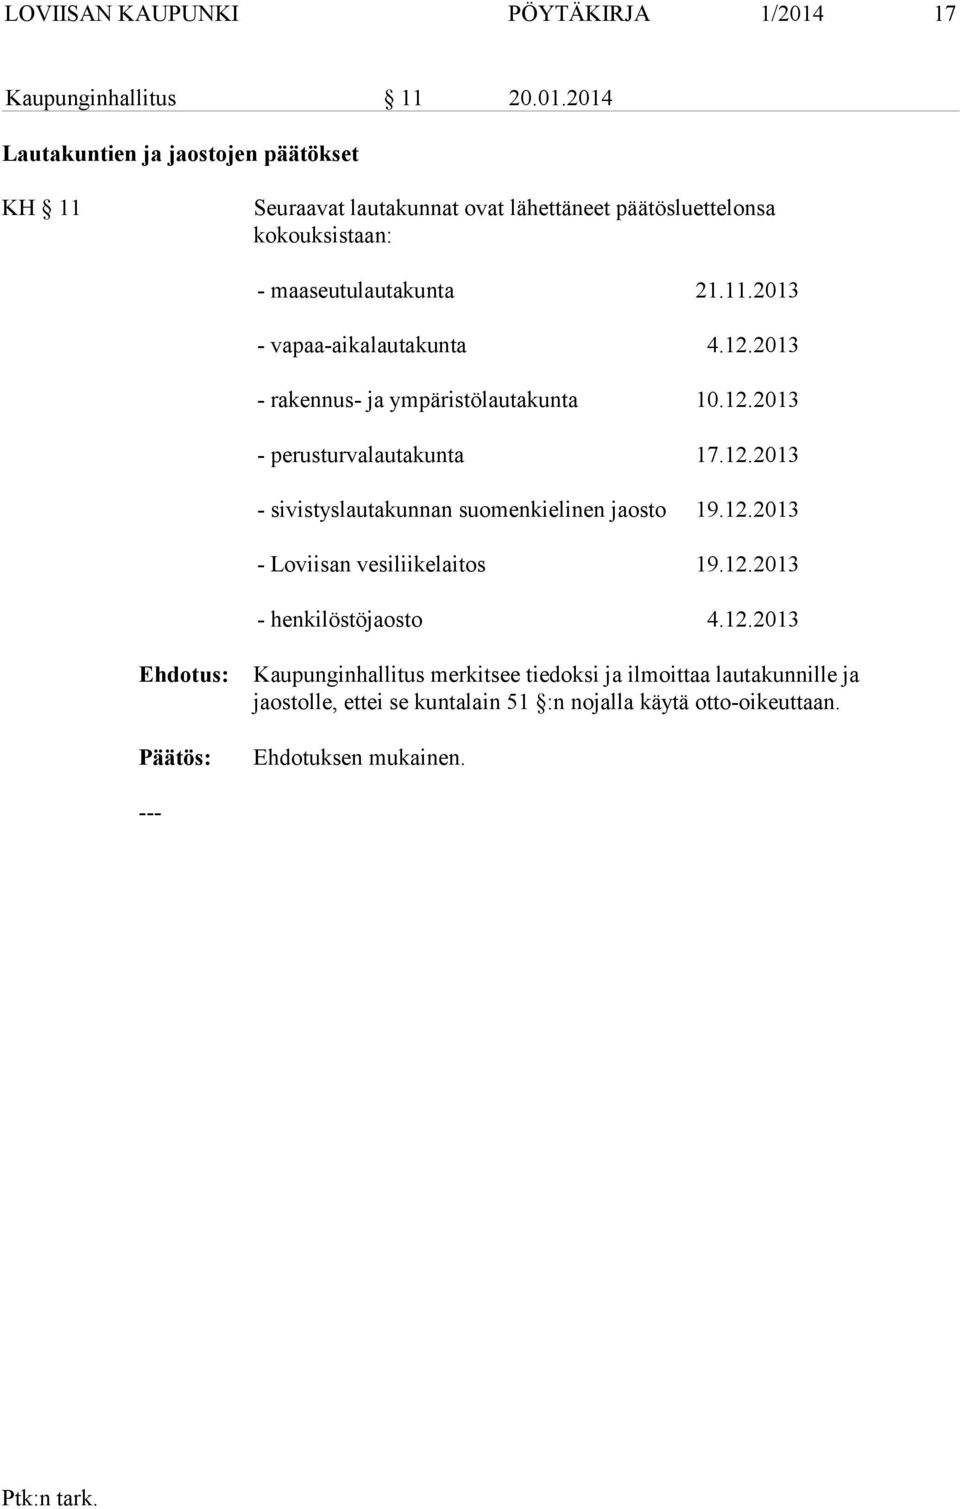 2014 Lautakuntien ja jaostojen päätökset KH 11 Seuraavat lautakunnat ovat lähettäneet päätösluettelonsa kokouksistaan: - maaseutulautakunta 21.11.2013 - vapaa-aikalautakunta 4.